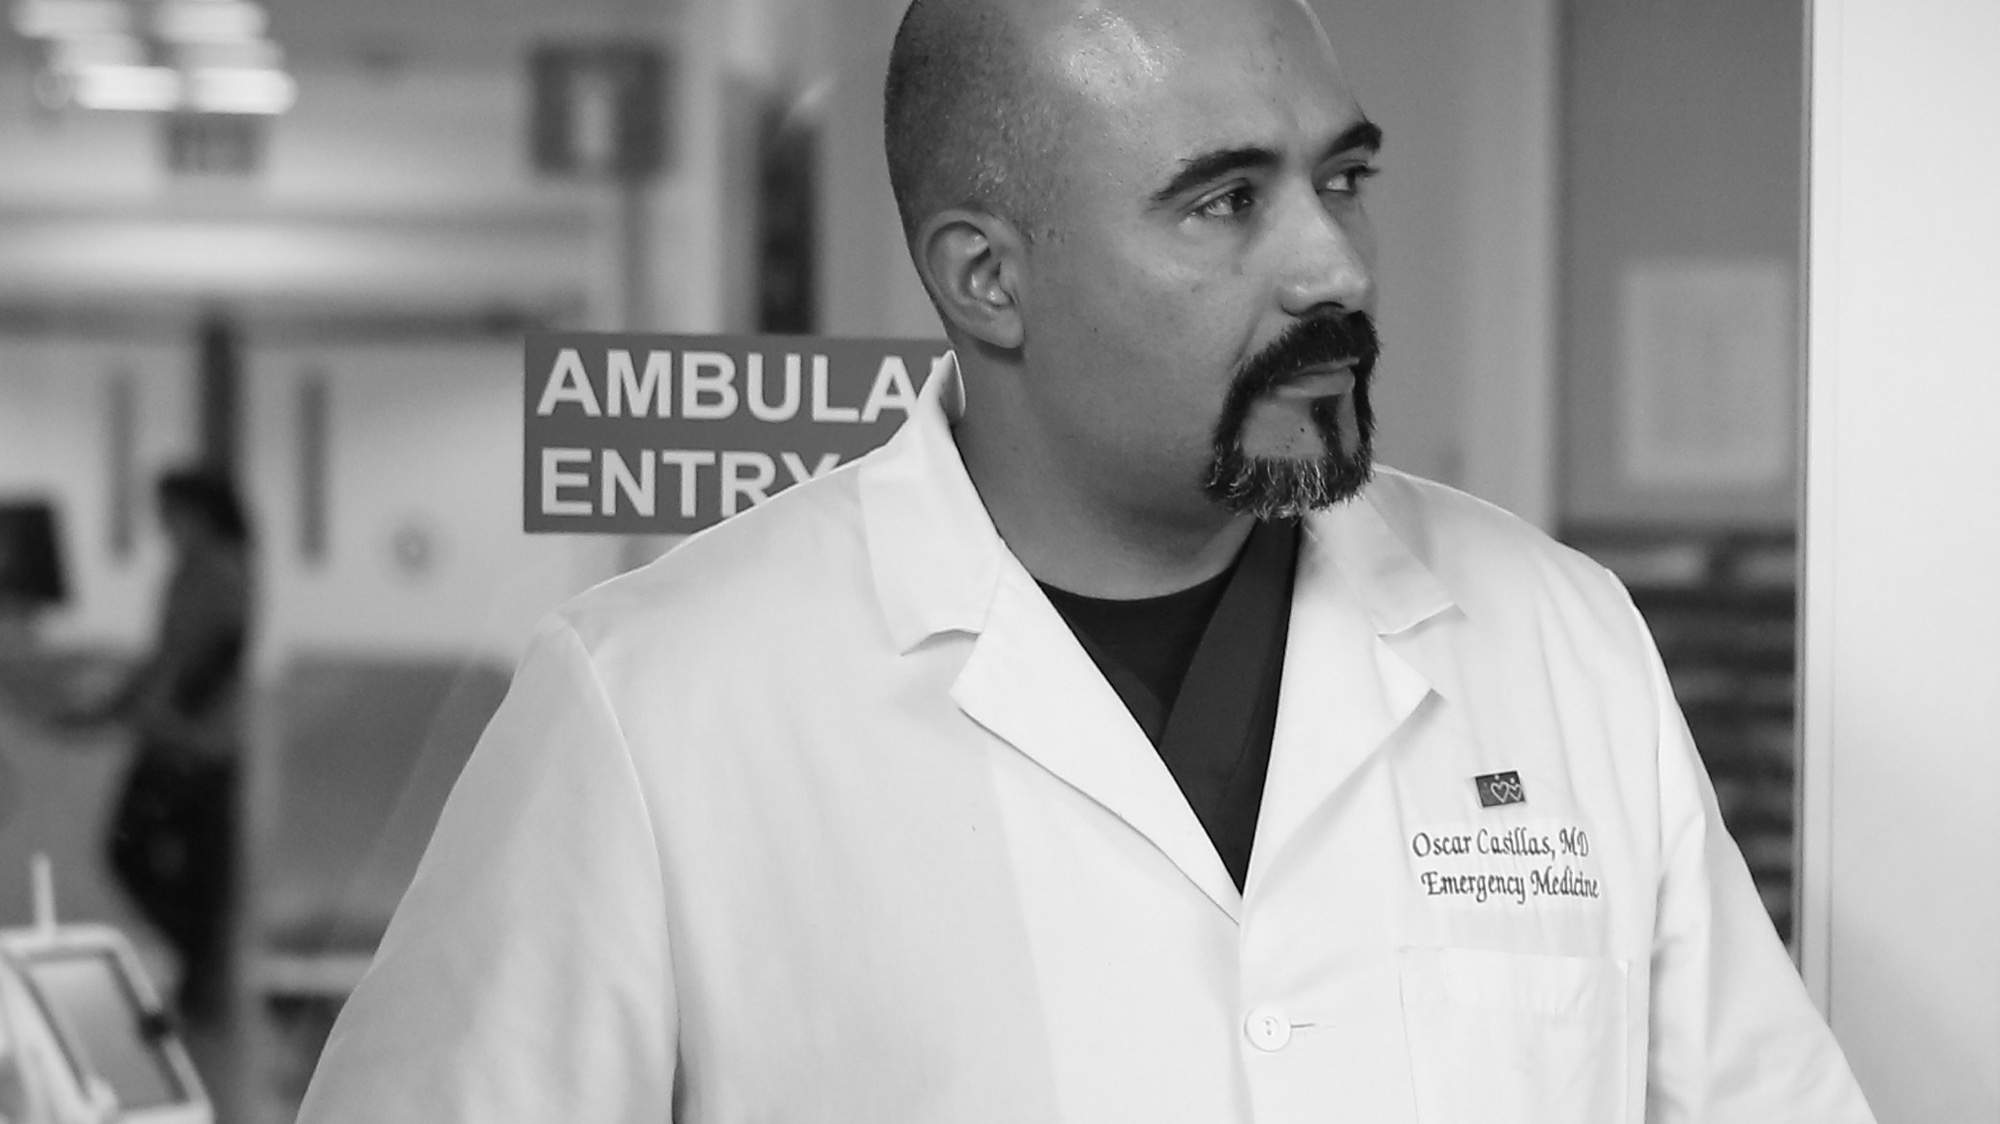 Retrato en blanco y negro del Dr. Oscar Casillas, un médico latino de mediana edad